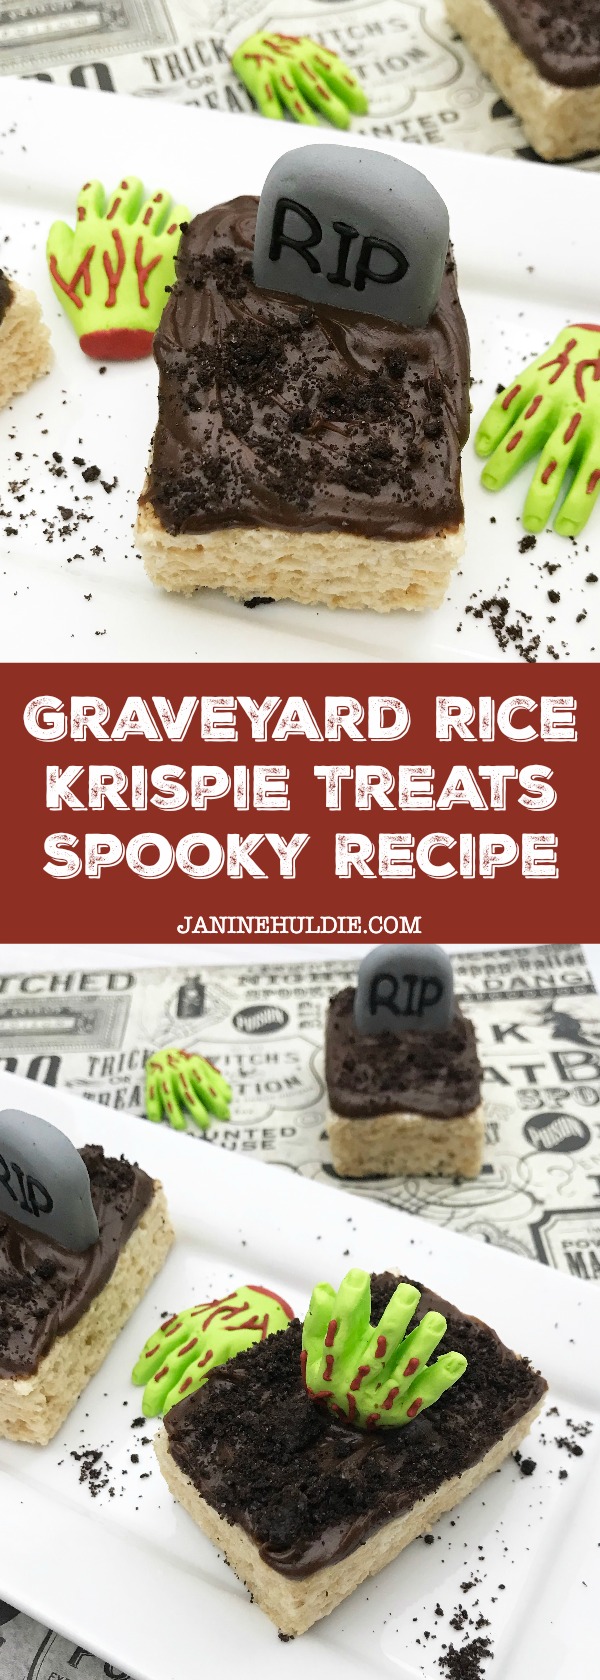 Graveyard Rice Krispie Treats Spooky Recipe